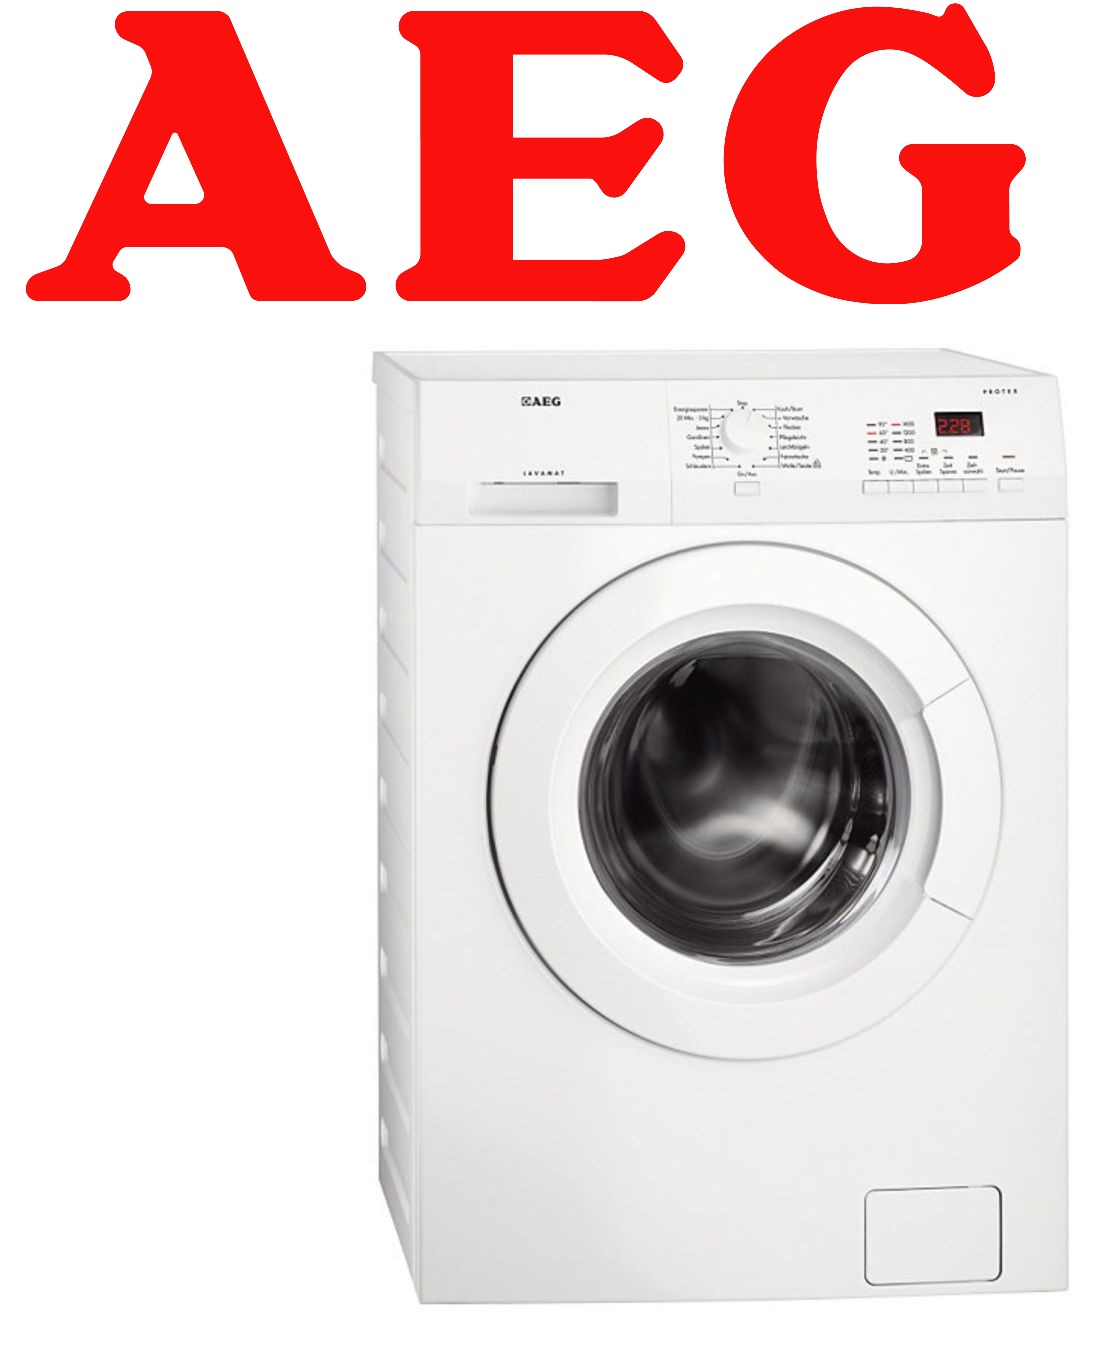 aeg-lavatrice